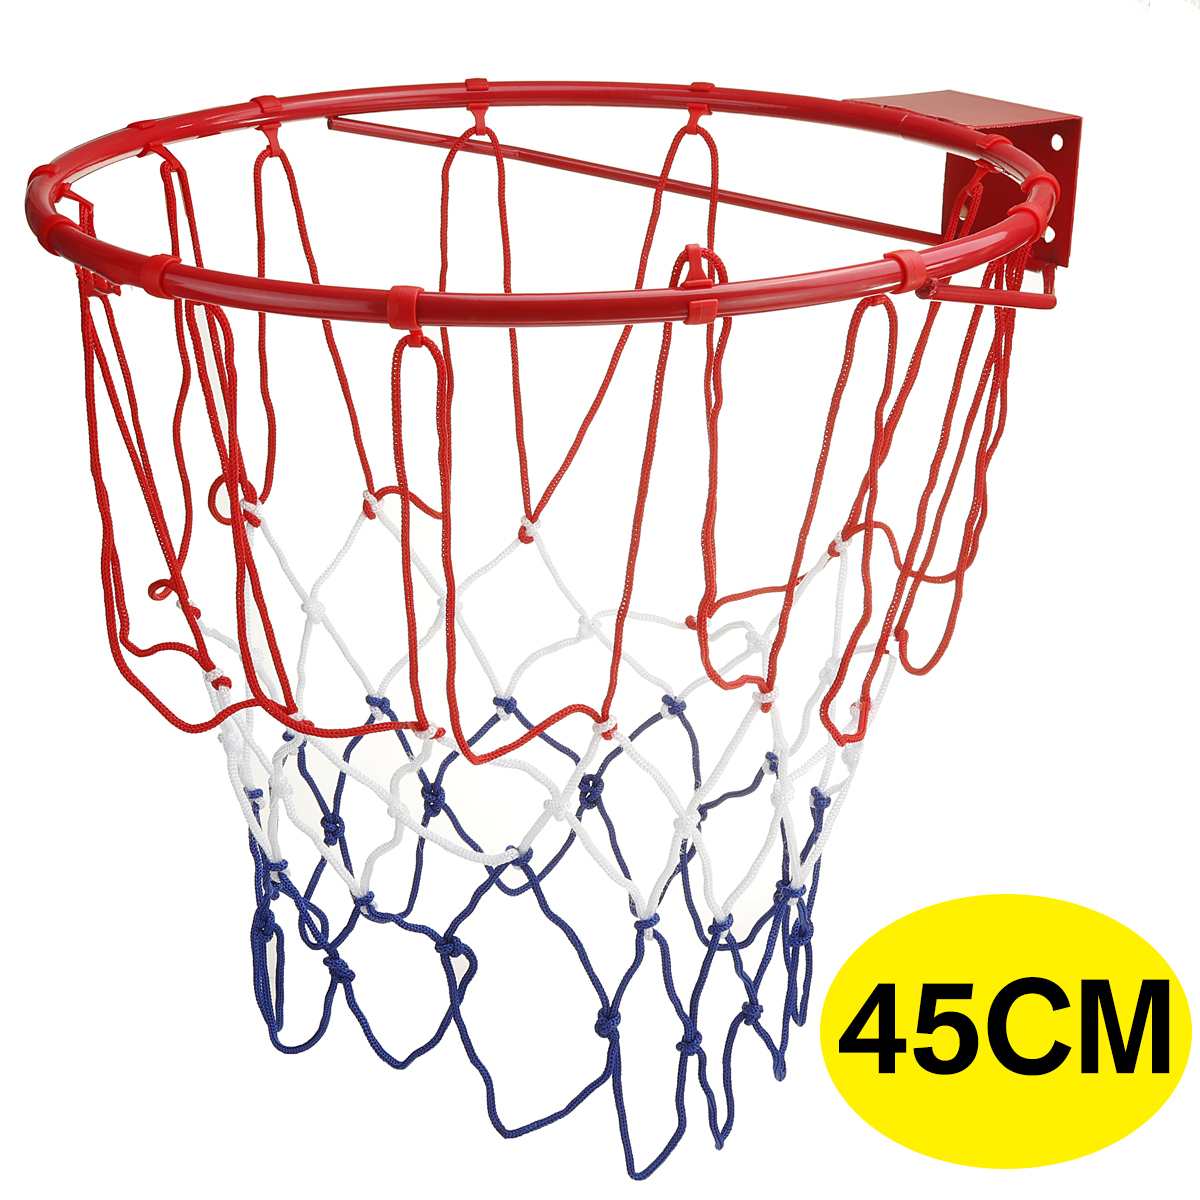 ข้อมูลเกี่ยวกับ 【Pelican mall】Basketball Hoop ห่วงบาสเกตบอล แขวนติดผนังขอบโลหะ ขนาด 45 Cm รุ่น ห่วงบาสเกตบอลแขวนติดผนังขอบโลหะเป้าหมายกำไรสุทธิสินค้ากีฬา 45ซม Basketball Hoop โครงโ